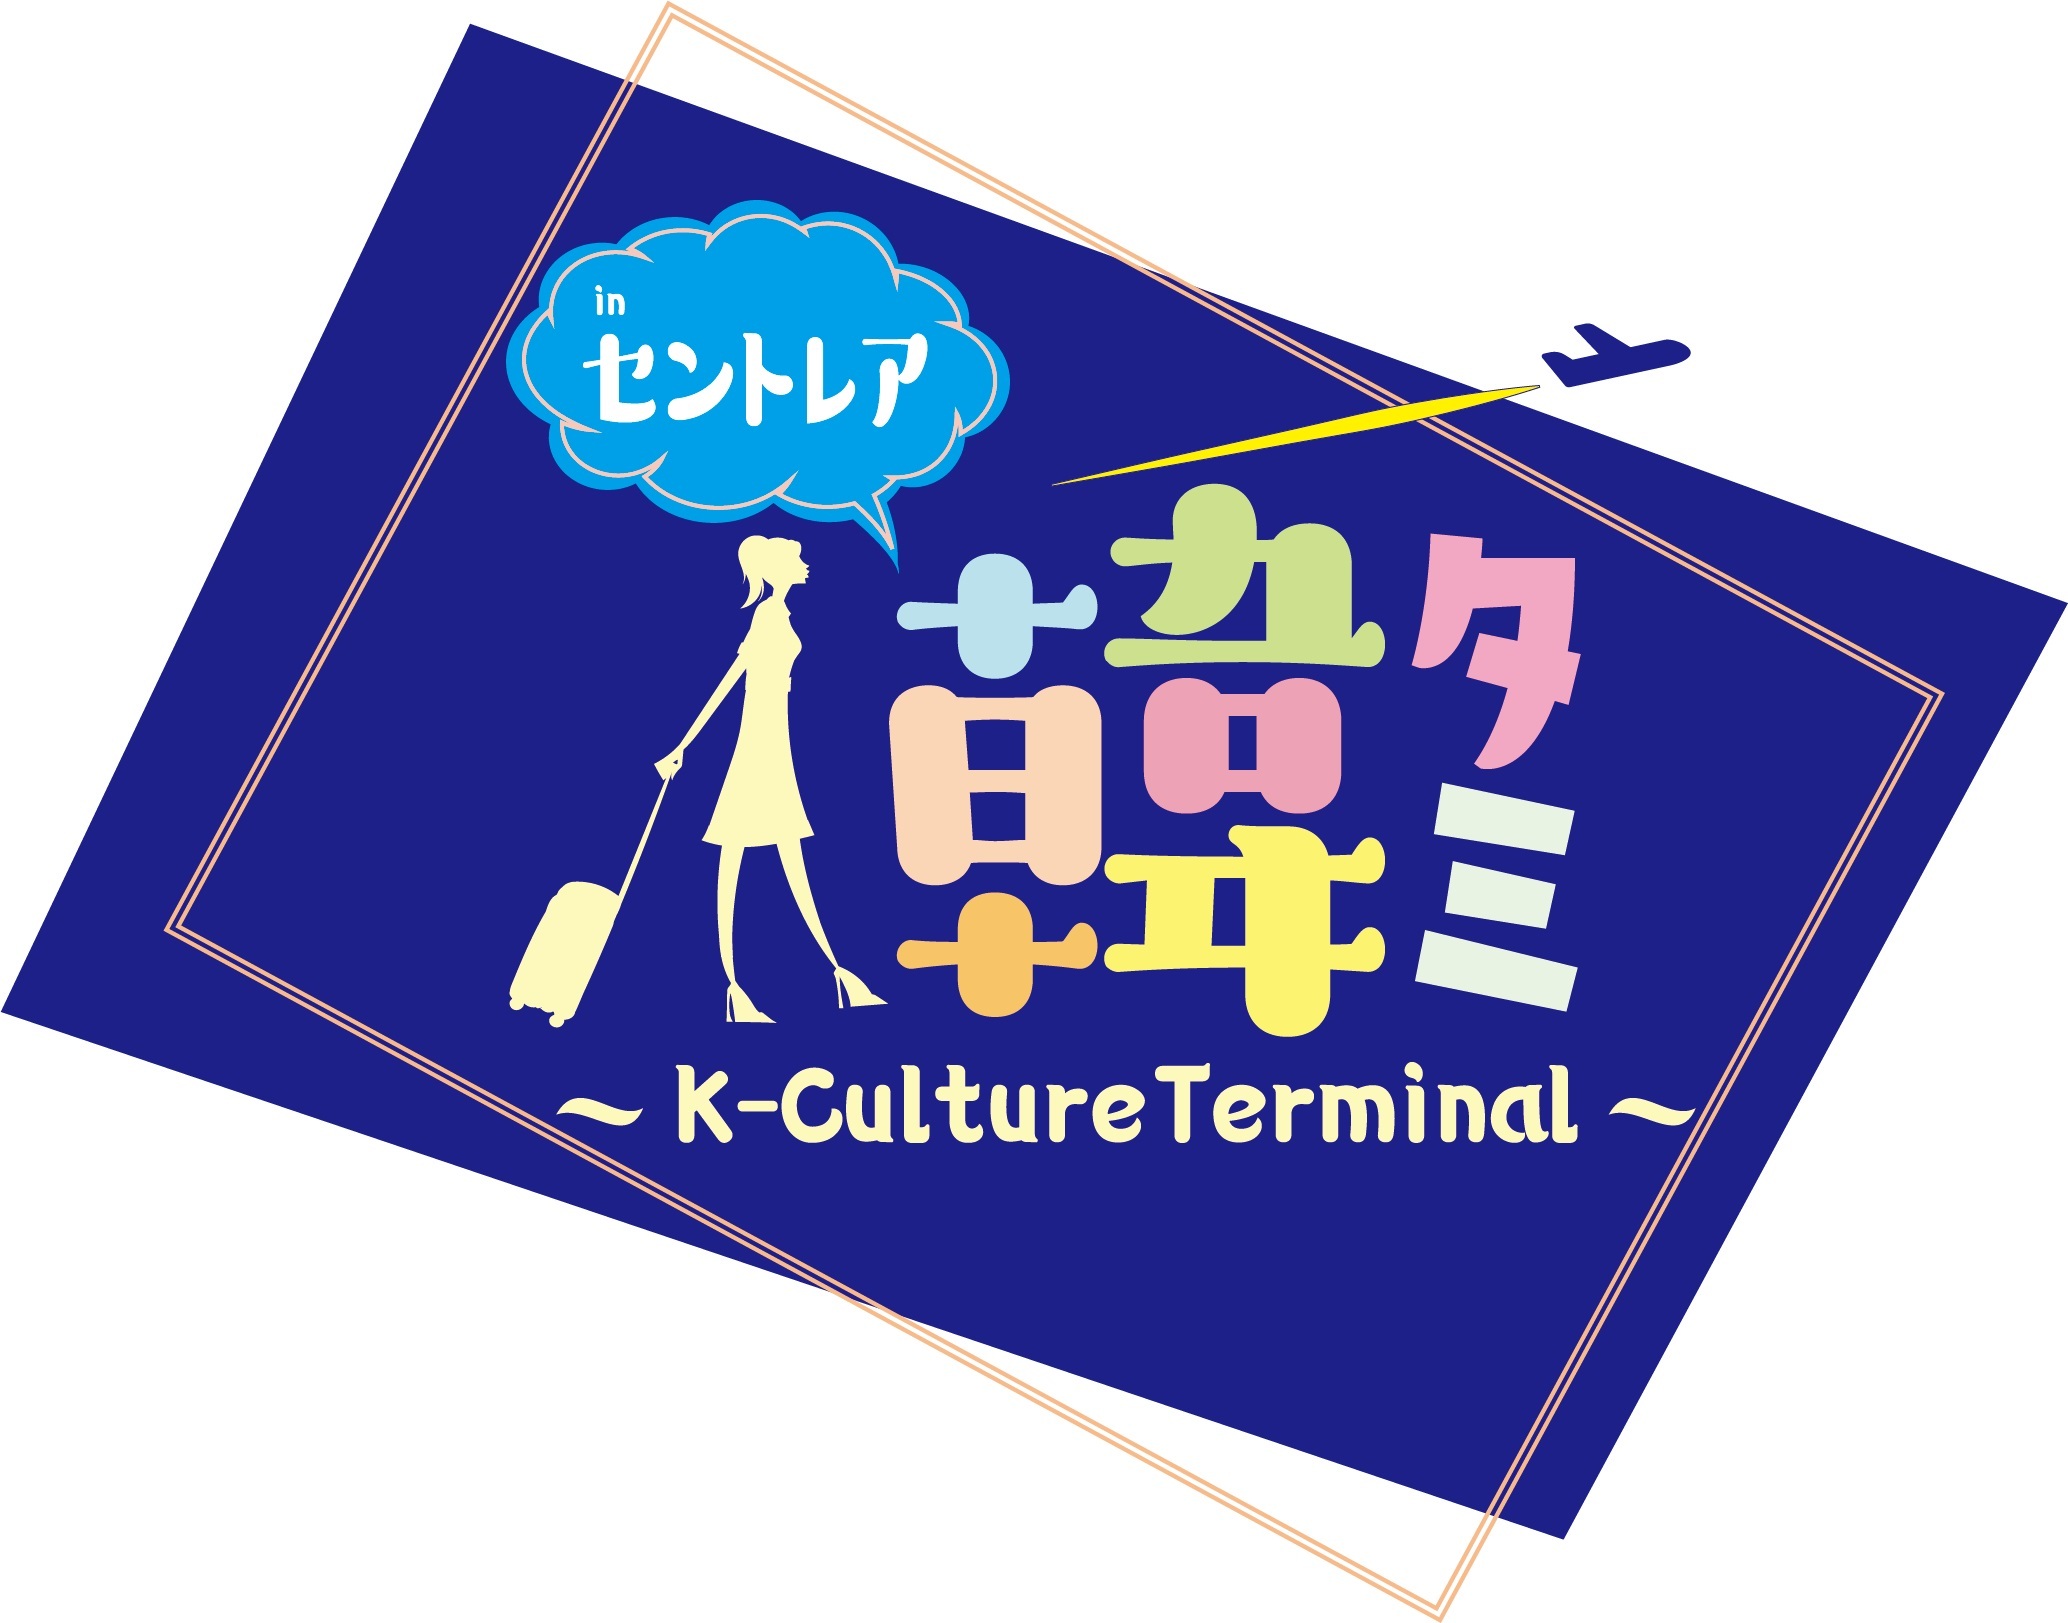 「韓タミ～K-Culture Terminal～ in セントレア」を 4月22日～23日に中部国際空港セントレアで開催！